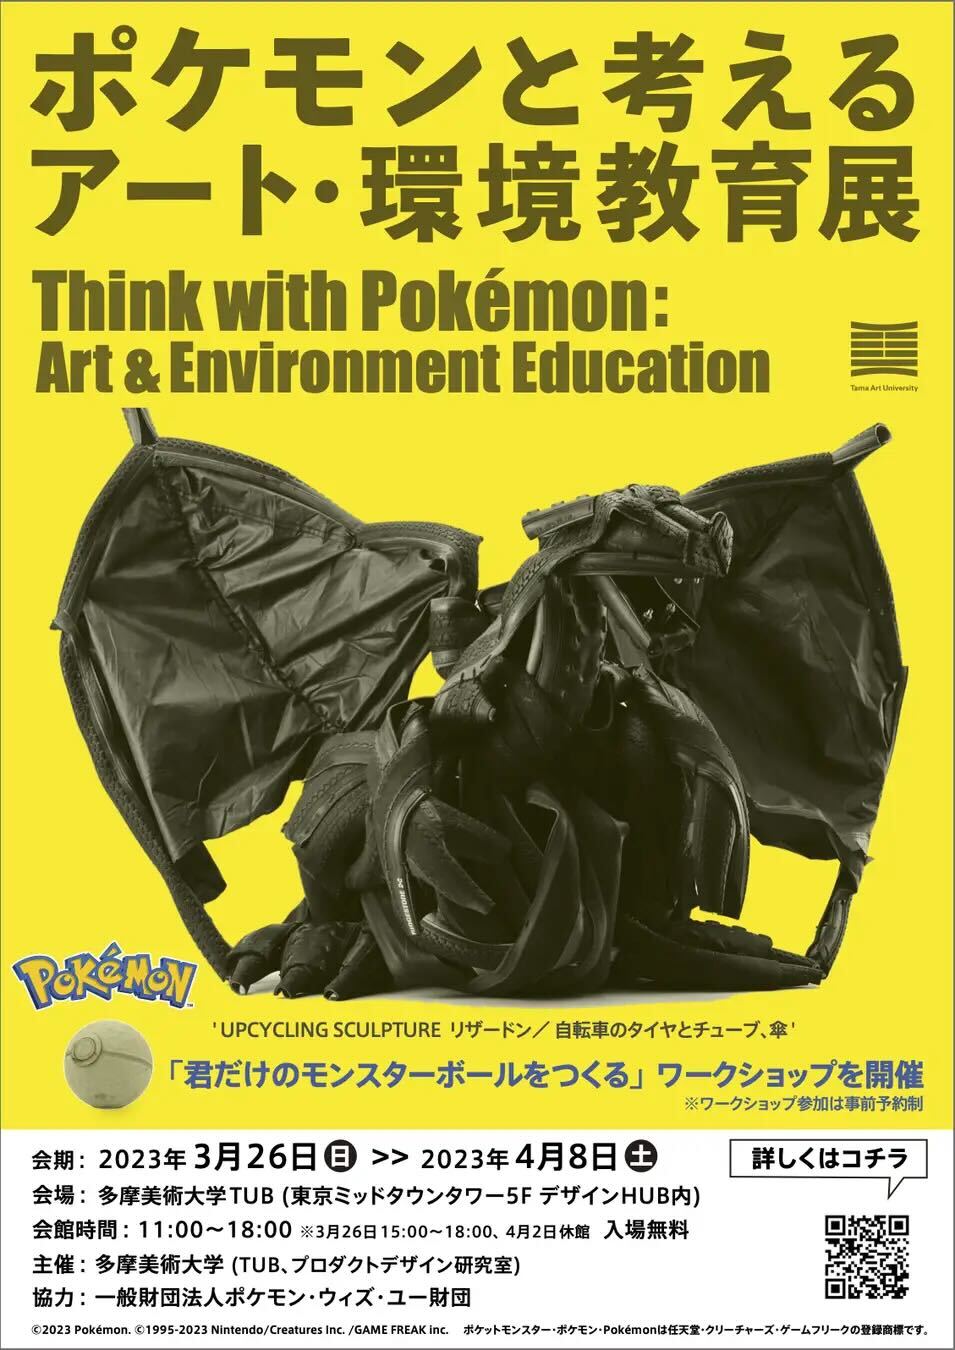 「藝術與環境教育展 Thinking with Pokemon」噴火龍